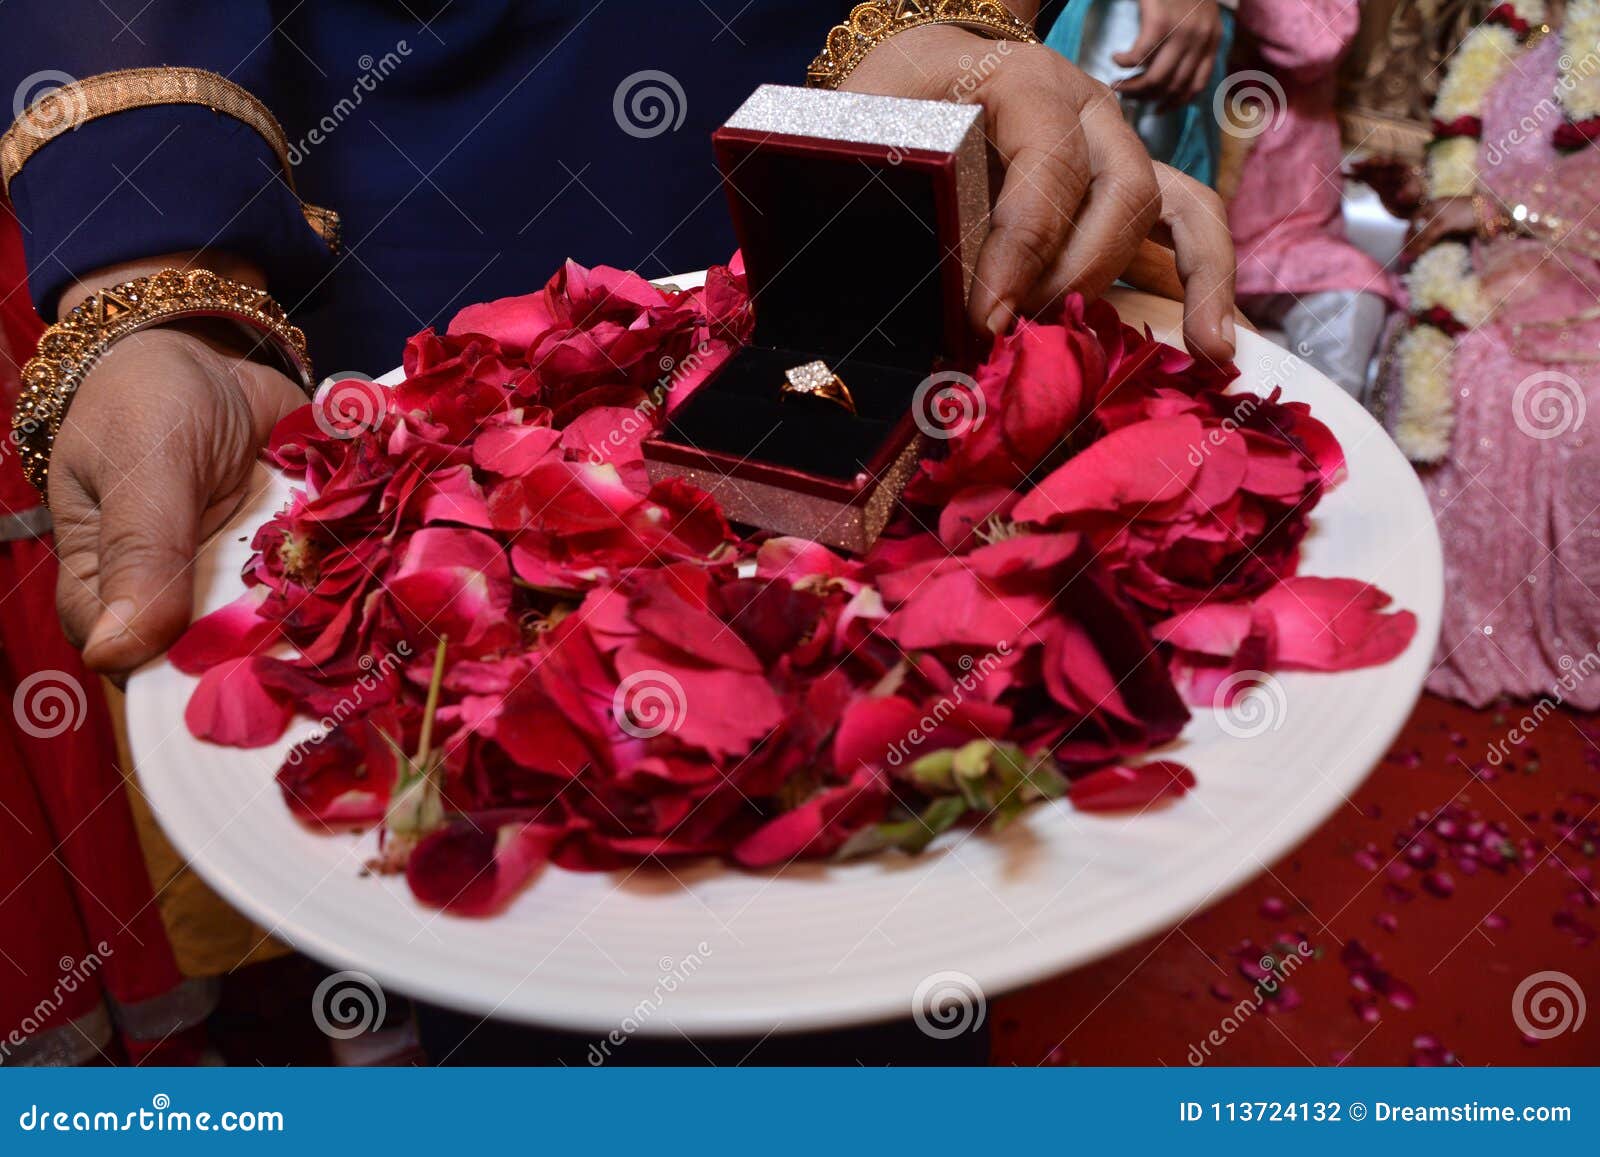 wedding ring platter | Engagement ring platter, Engagement decorations,  Engagement stage decoration